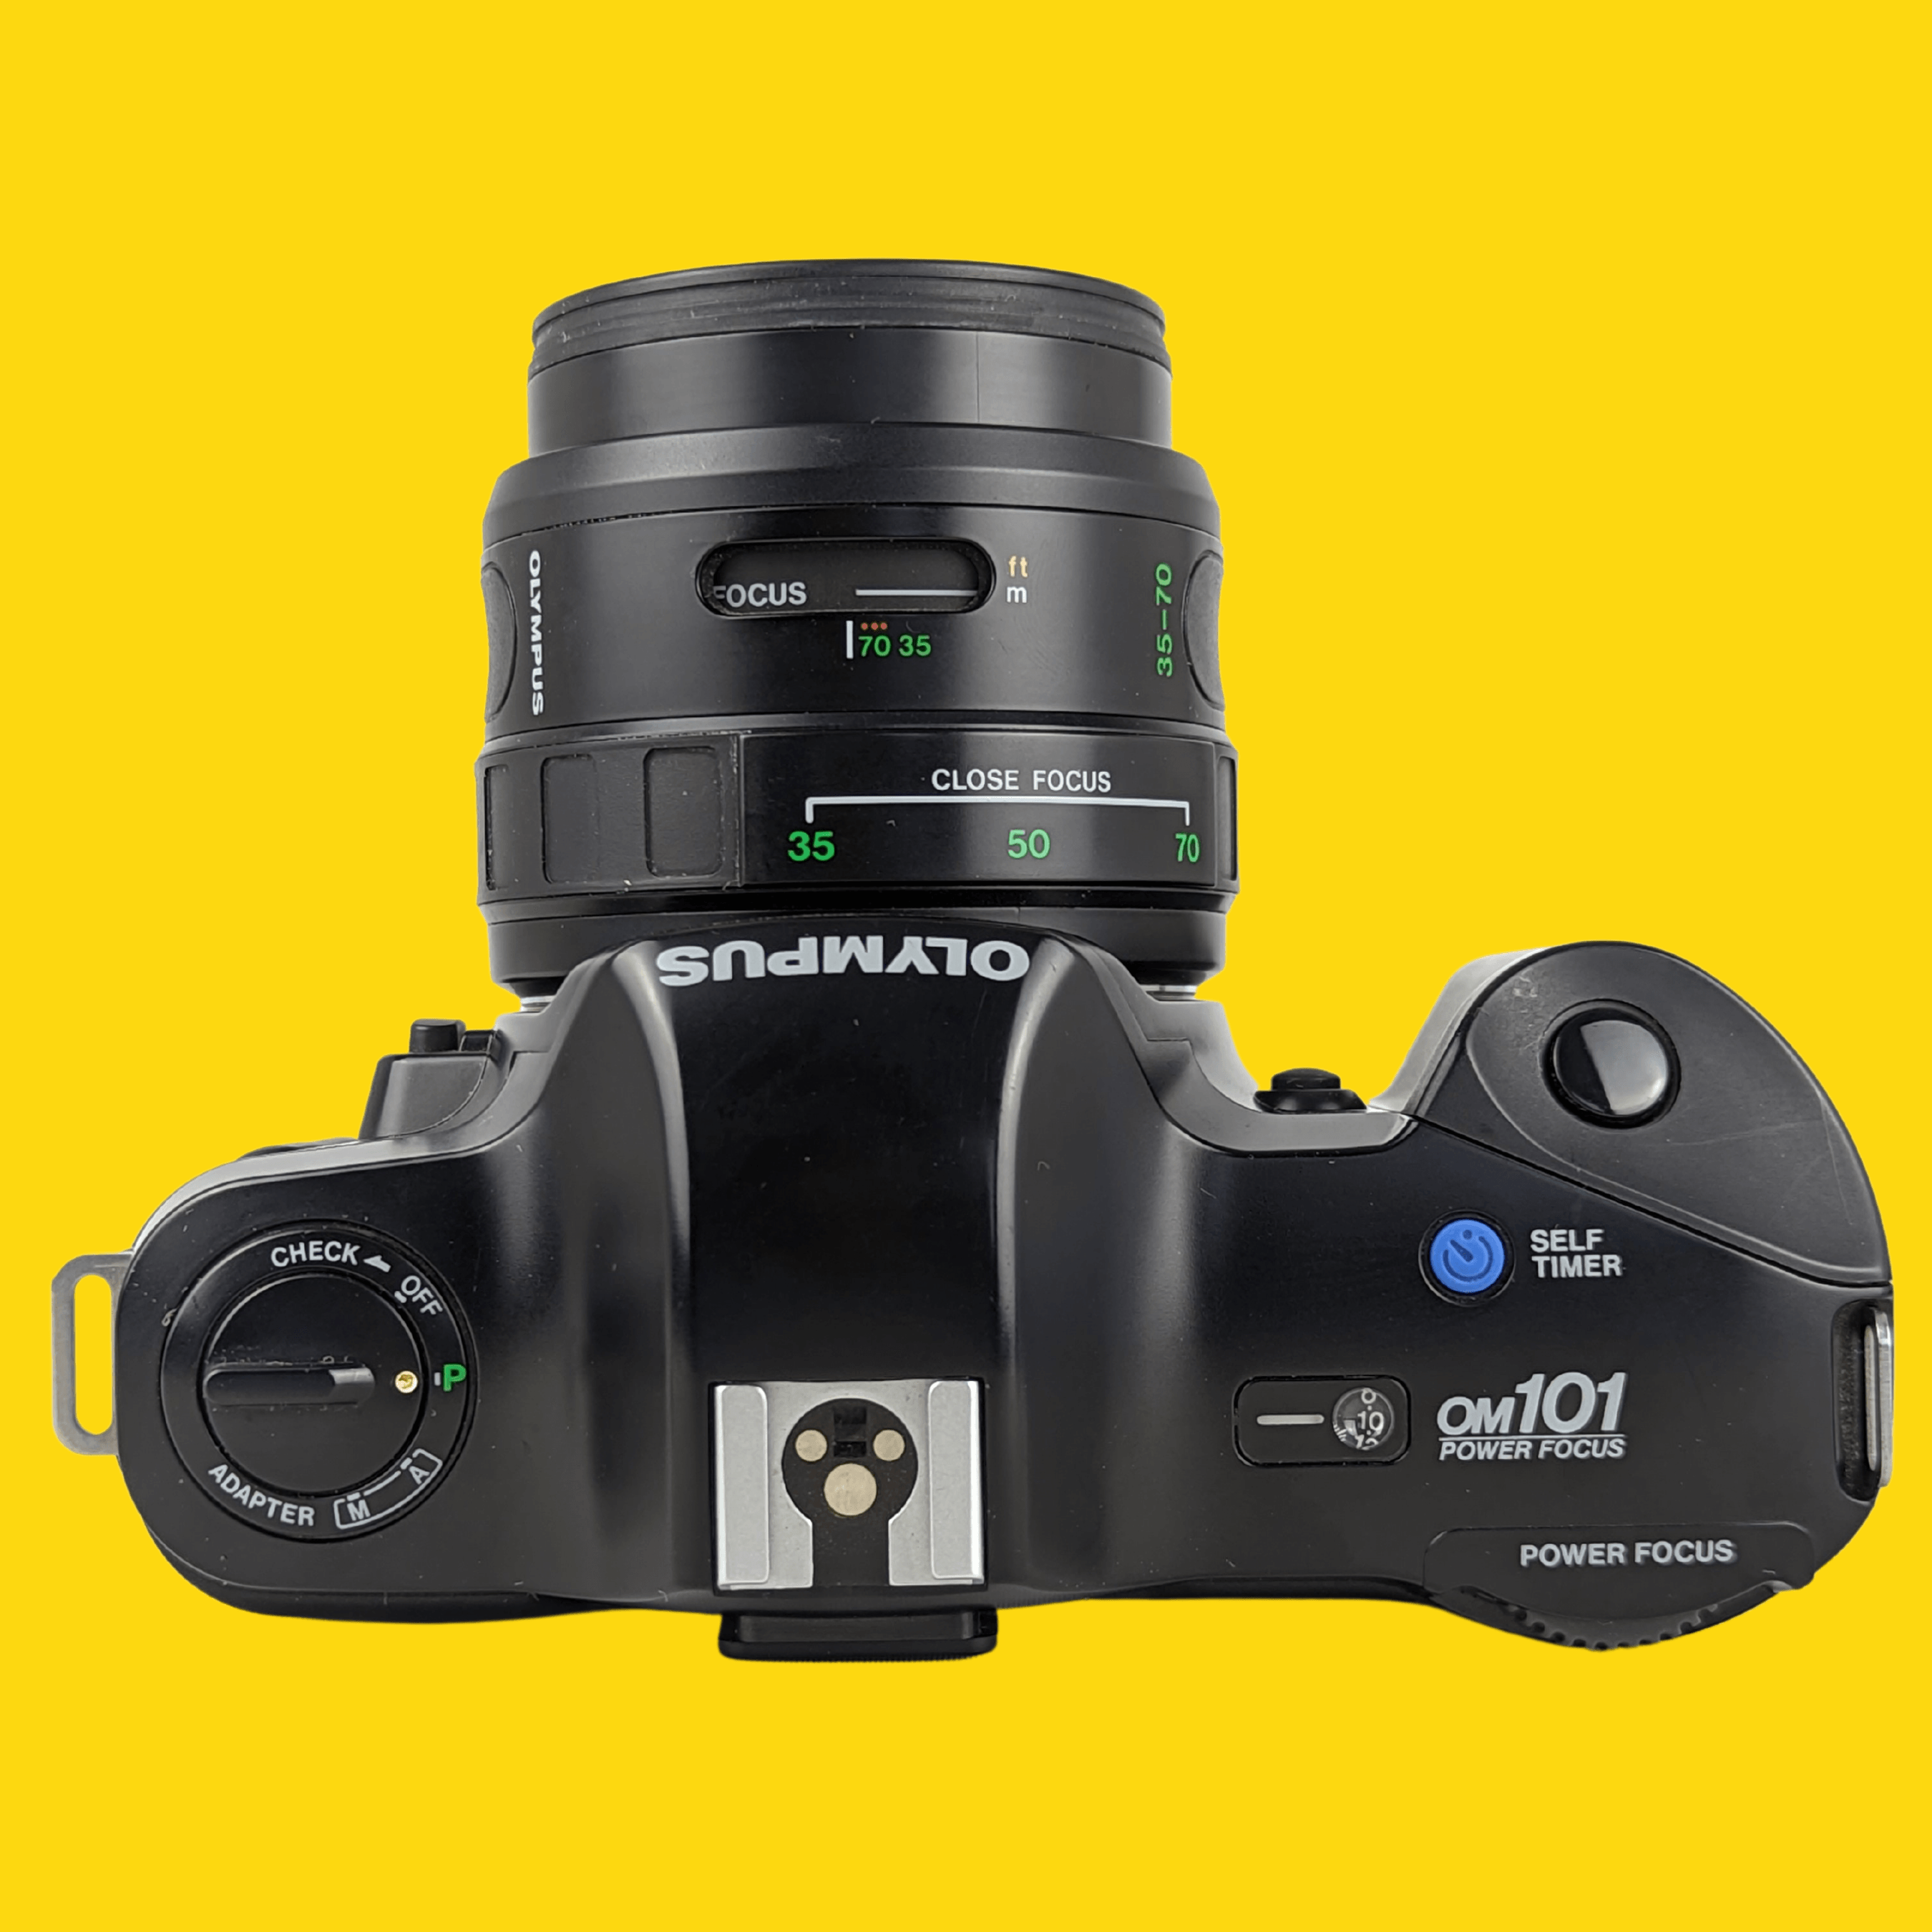 オリンパス OM101 自動一眼レフ 35mm フィルム カメラ パワー フォーカス レンズ付き